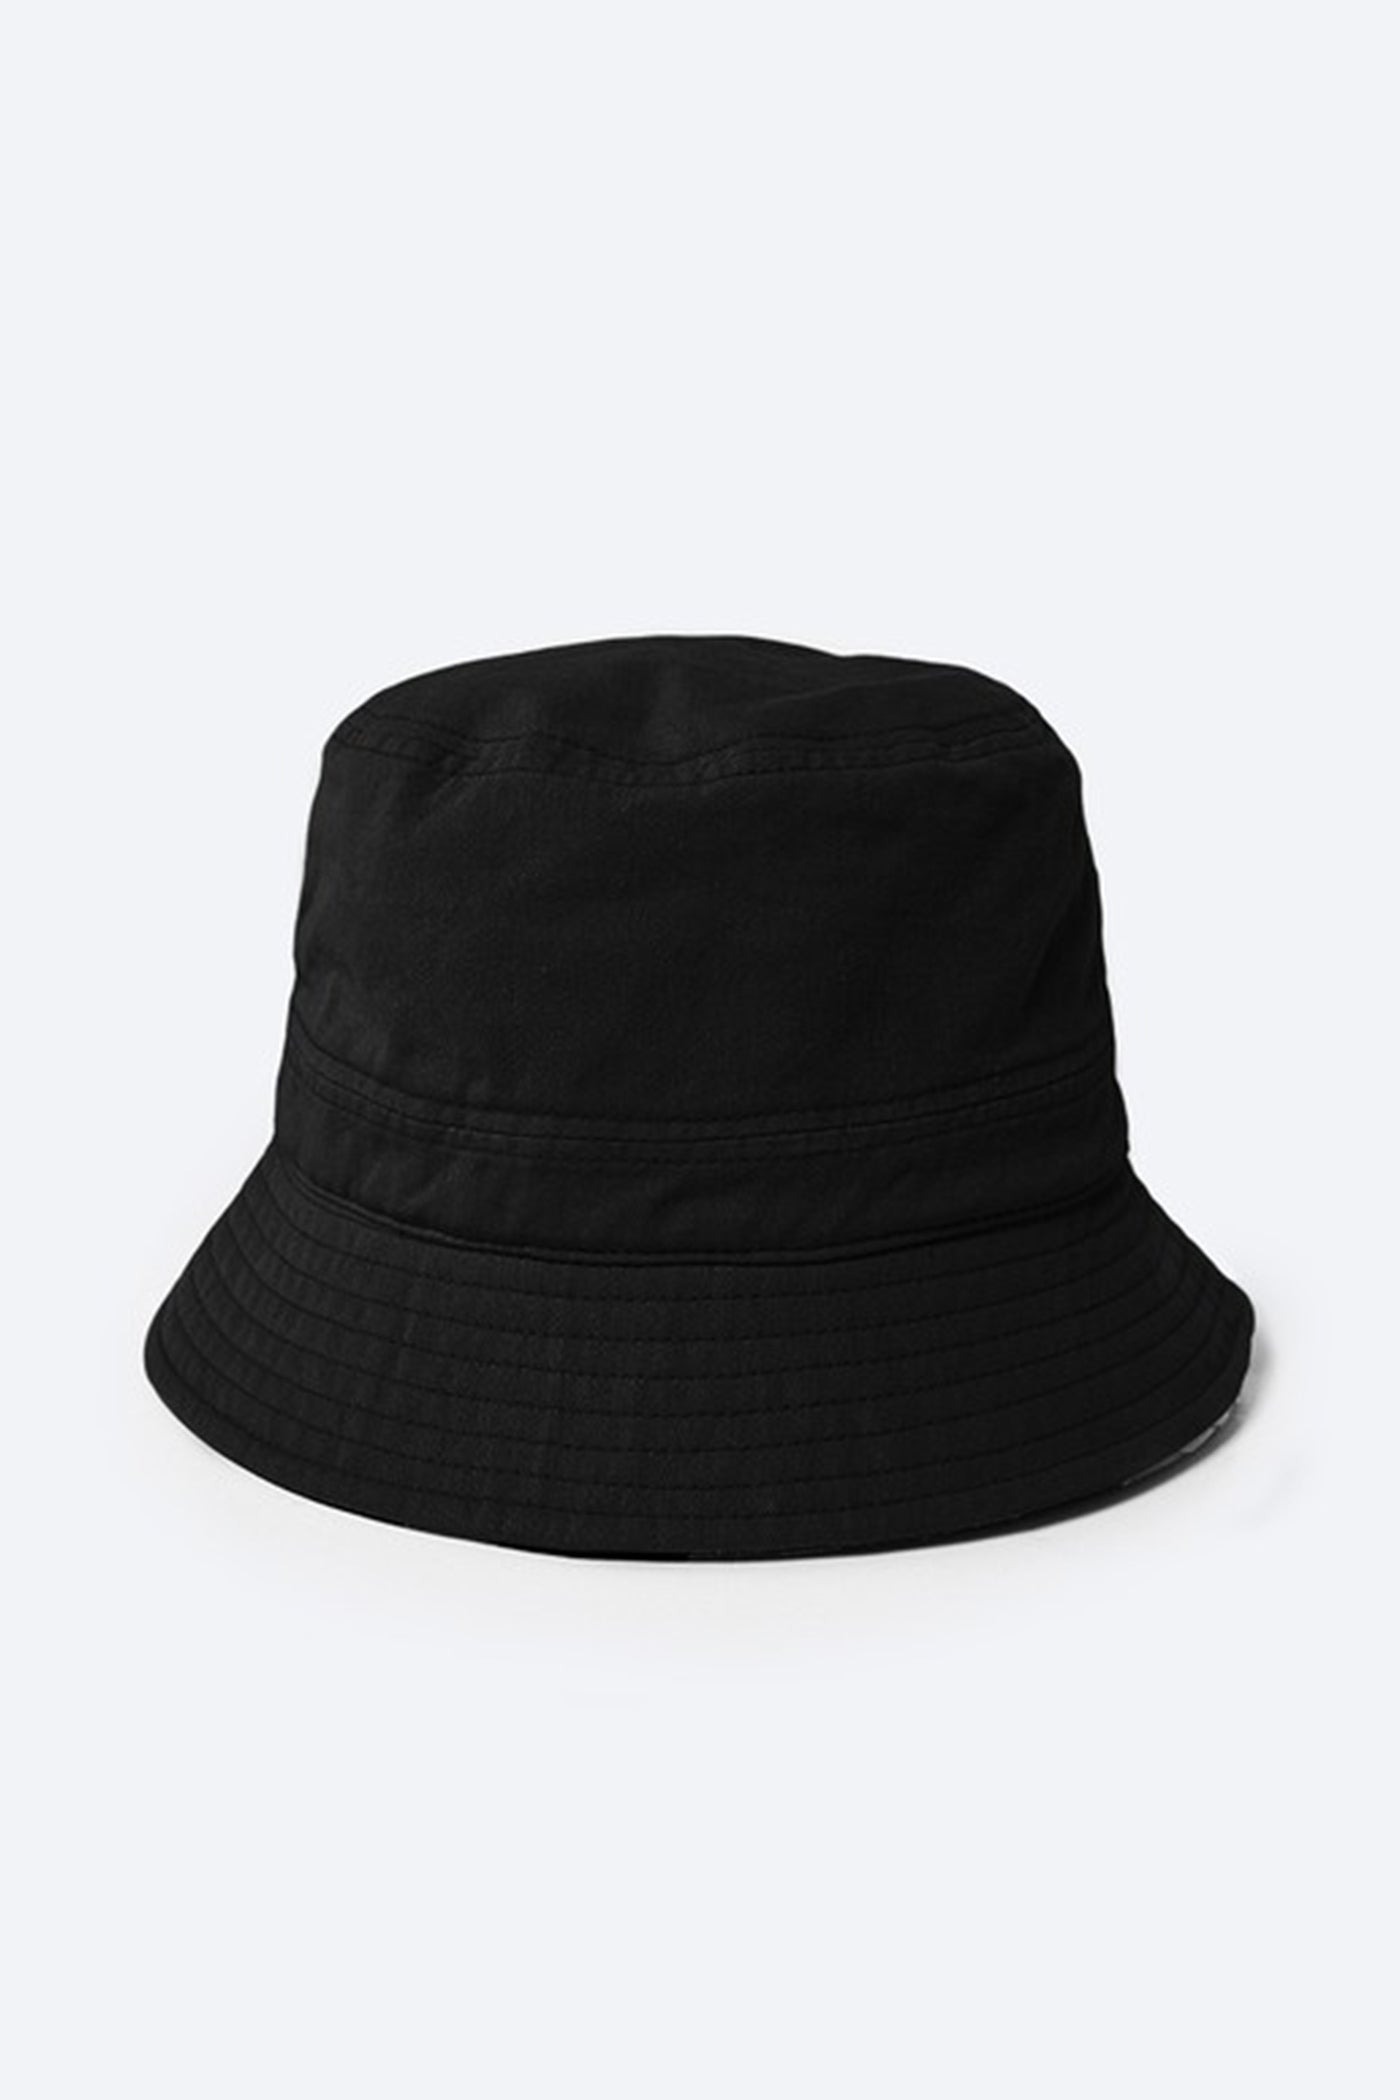 solid black bucket hat